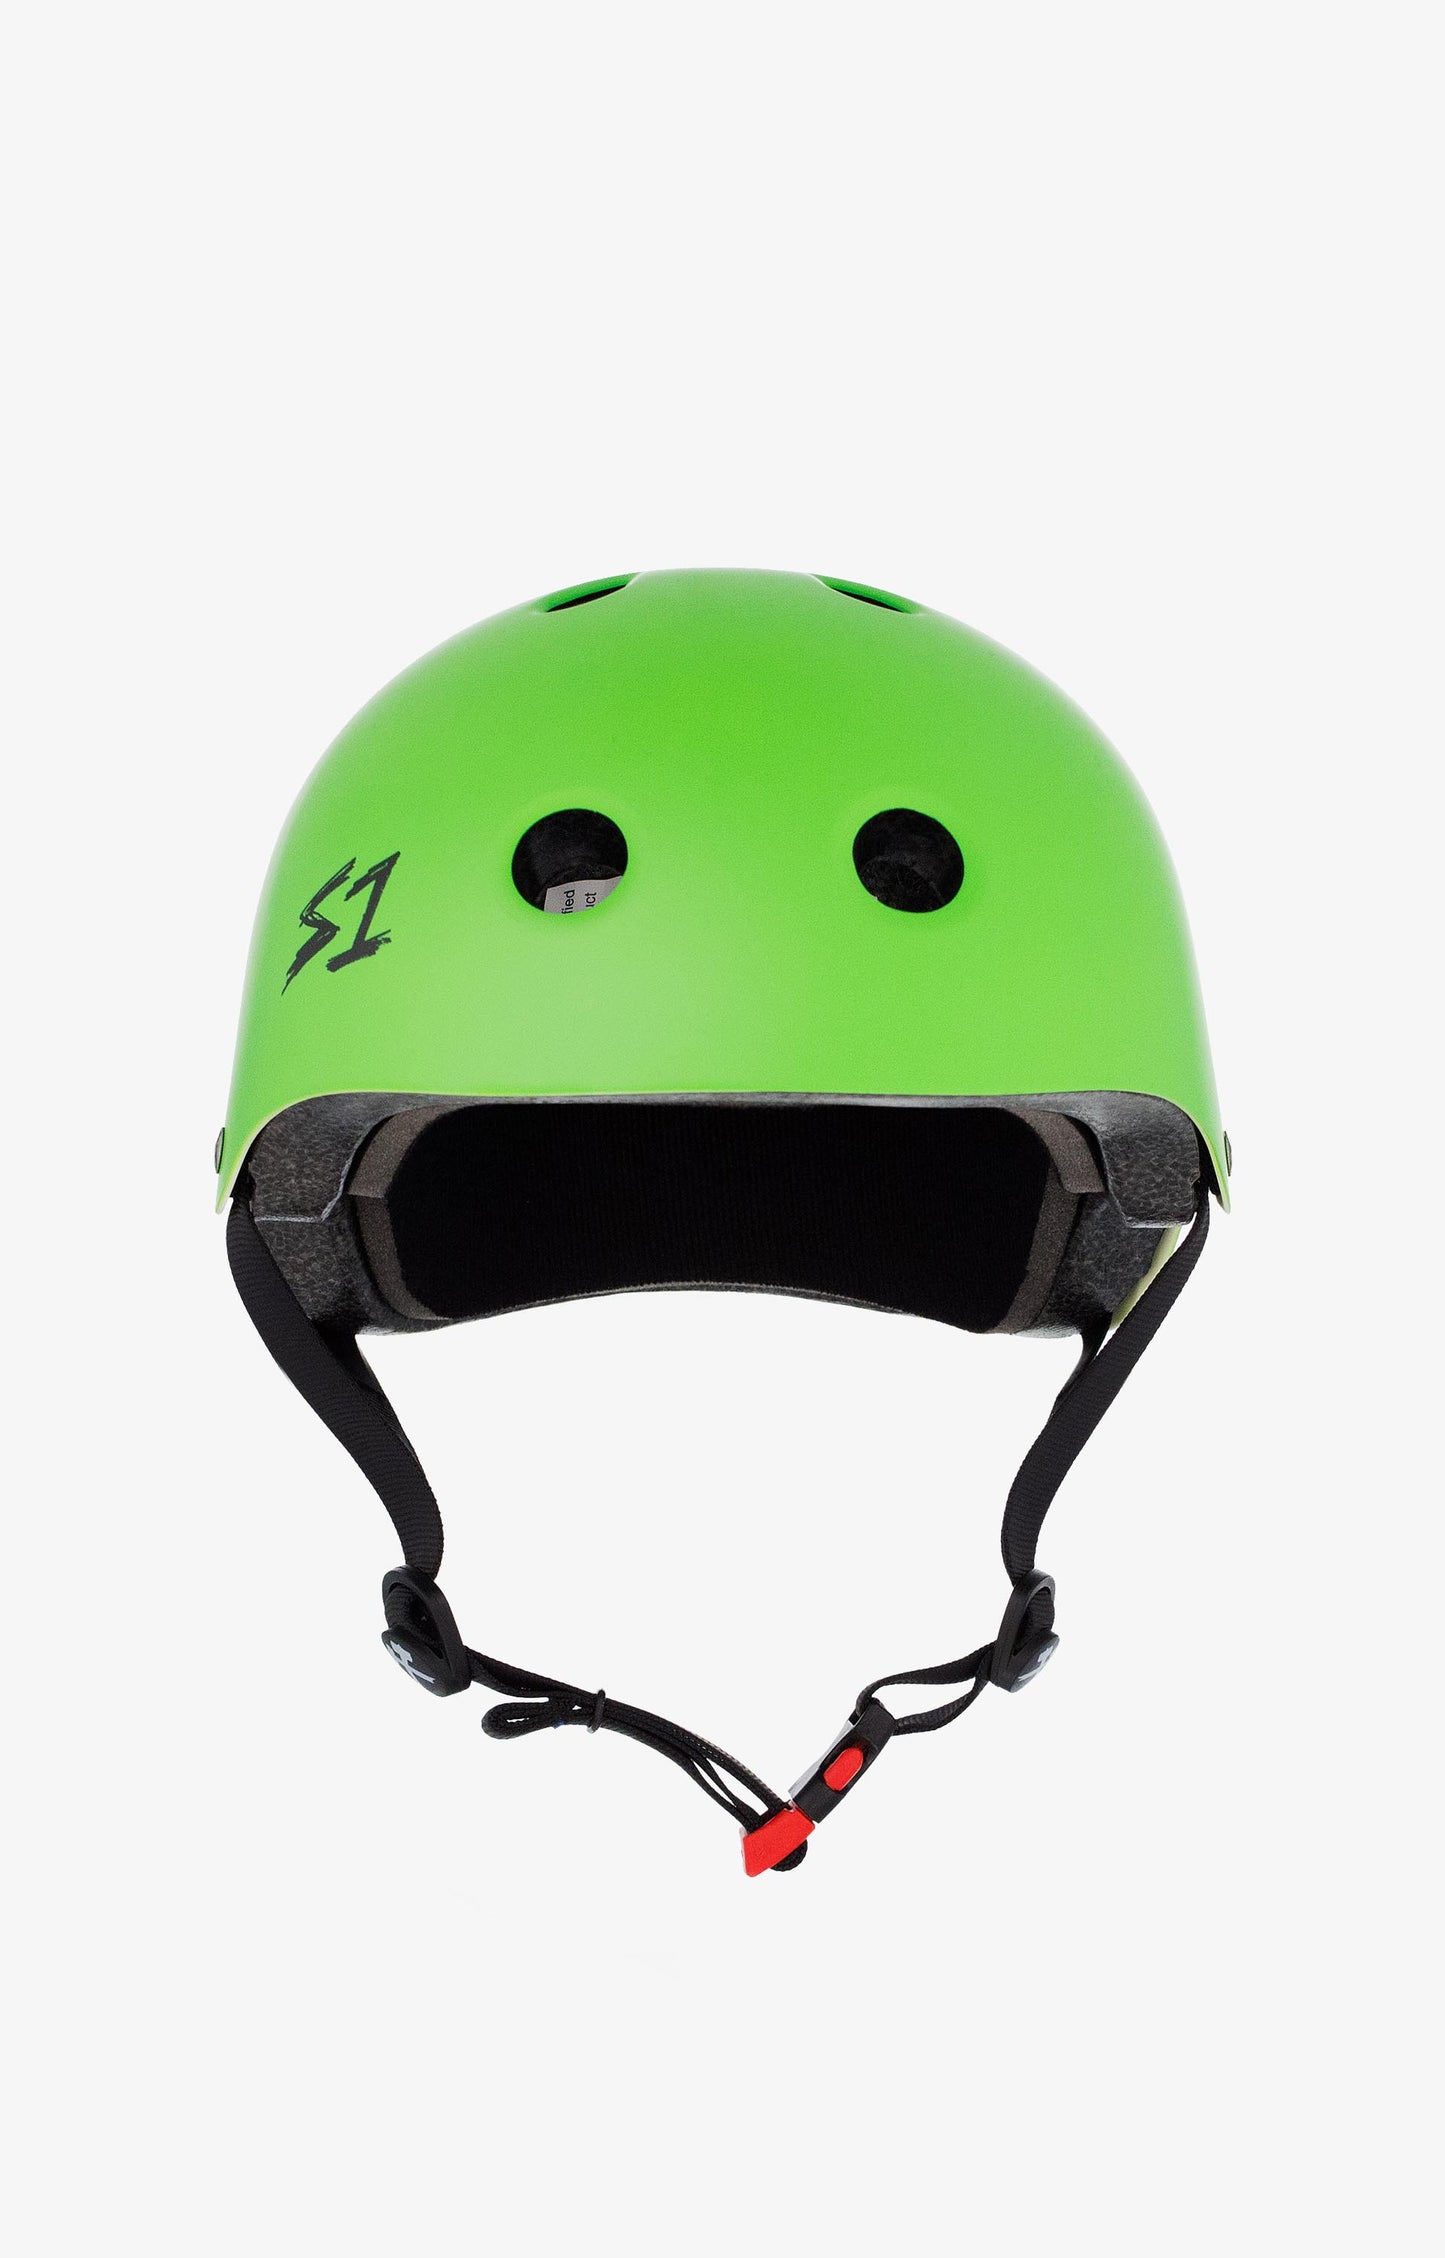 S-One Mini Lifer Helmet, Matte Green